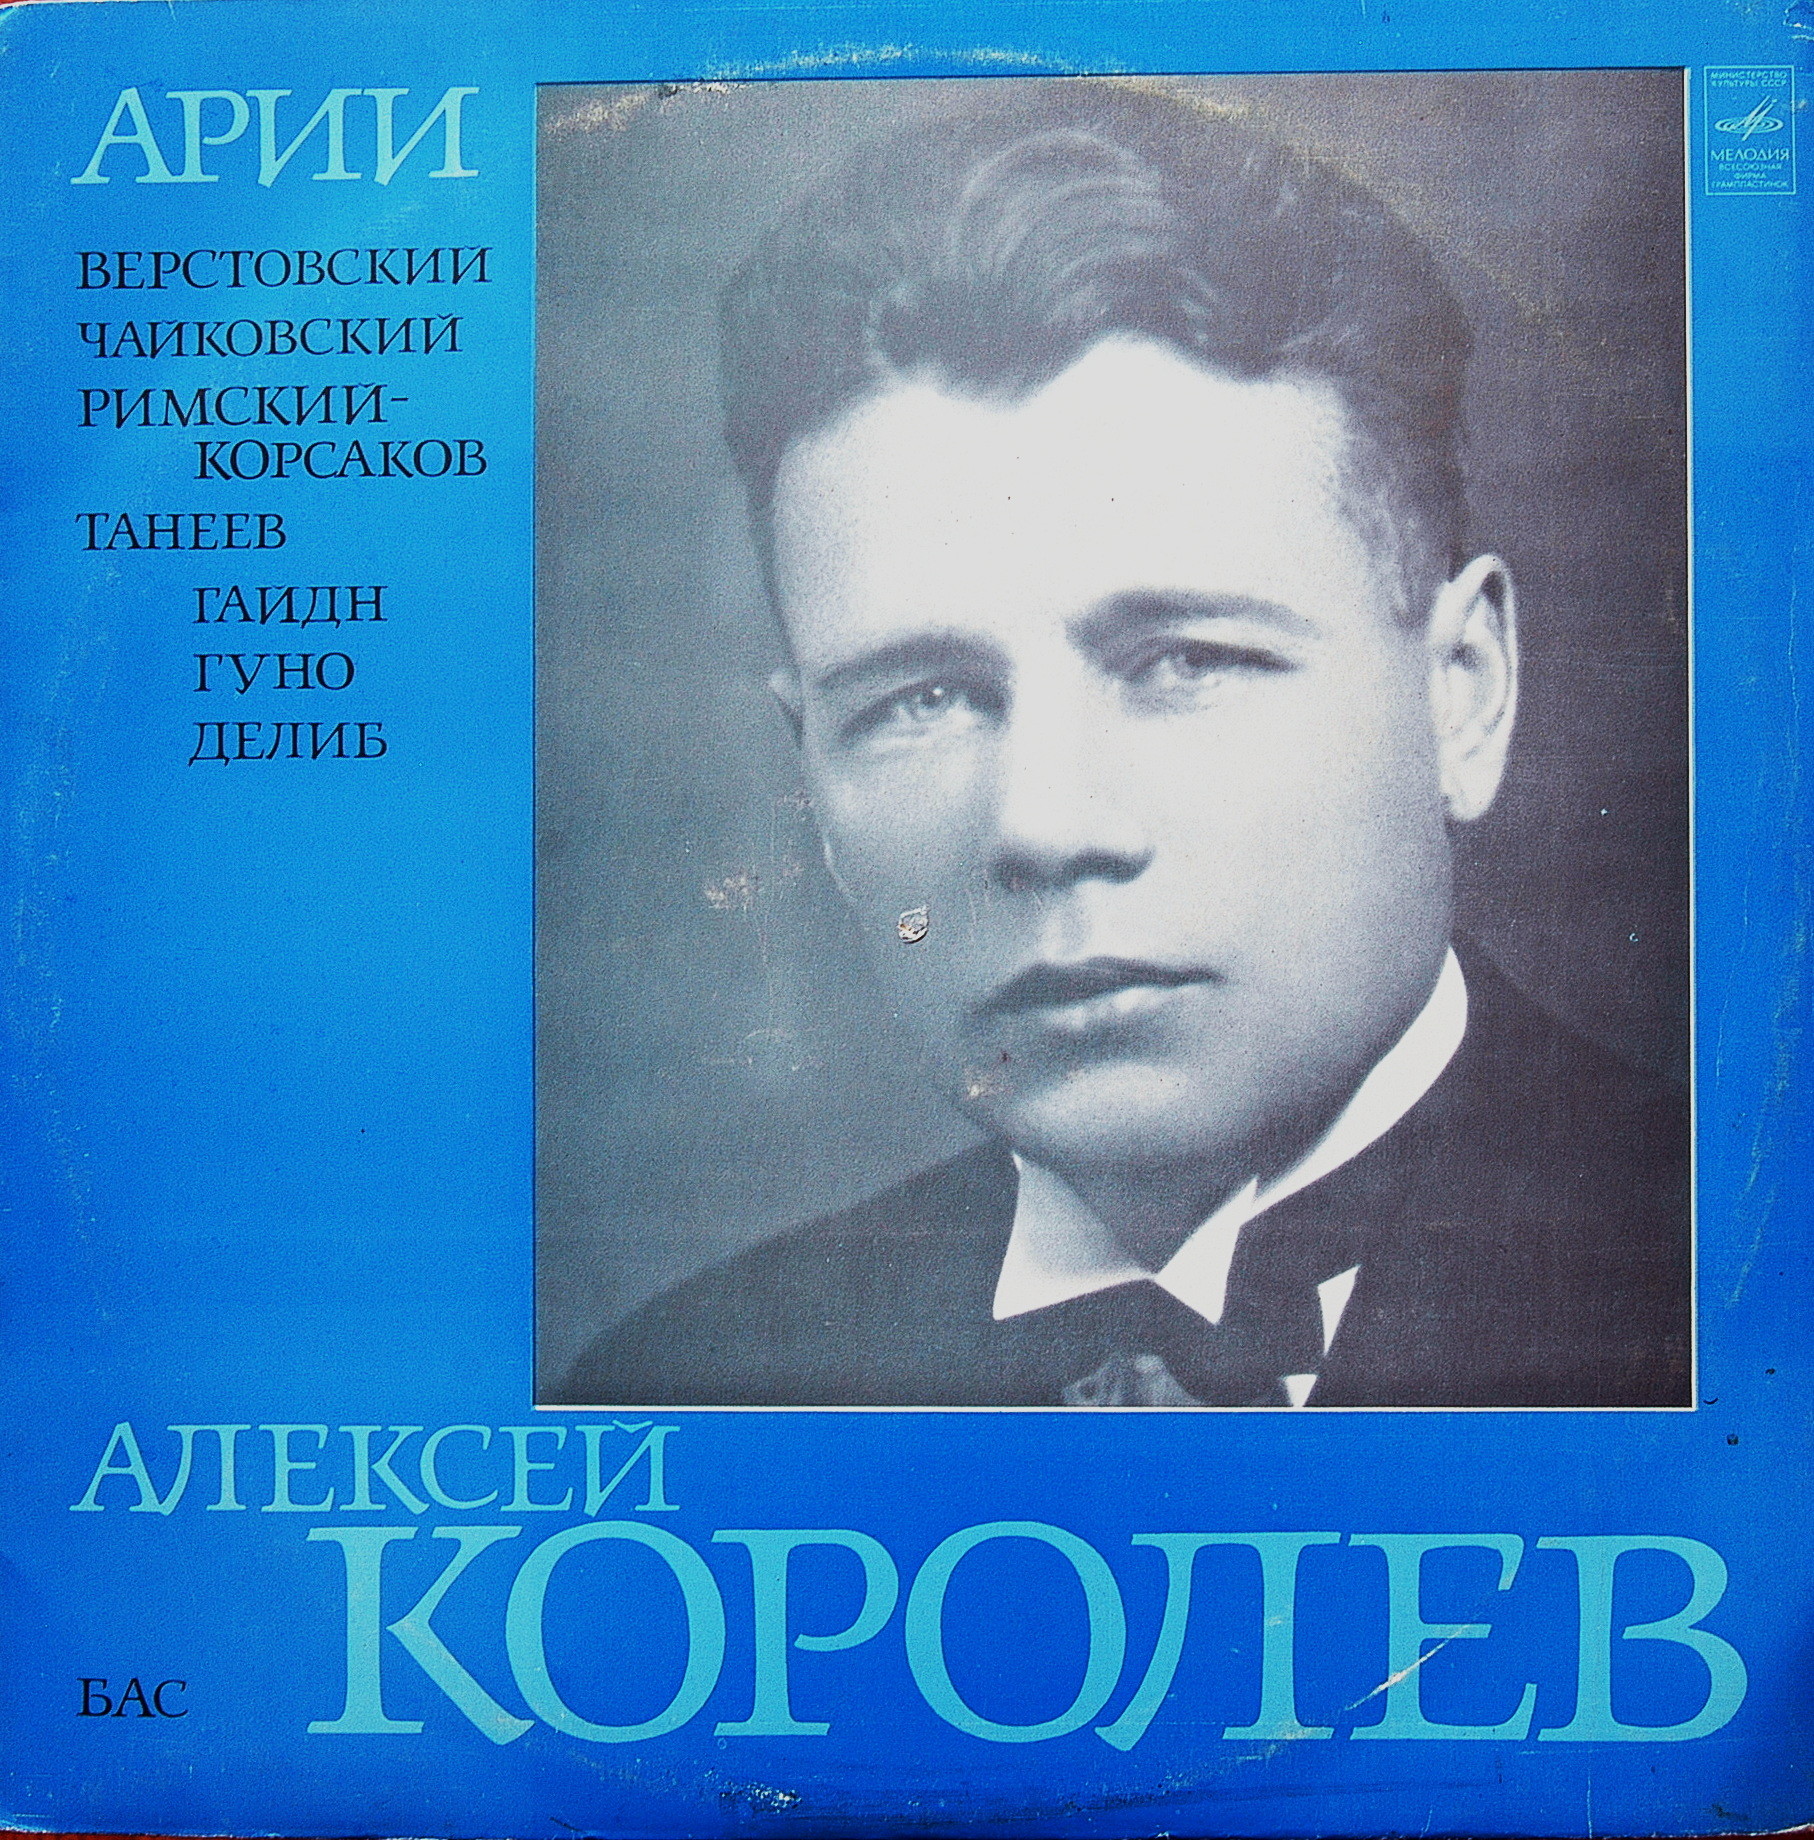 Алексей КОРОЛЕВ (бас)